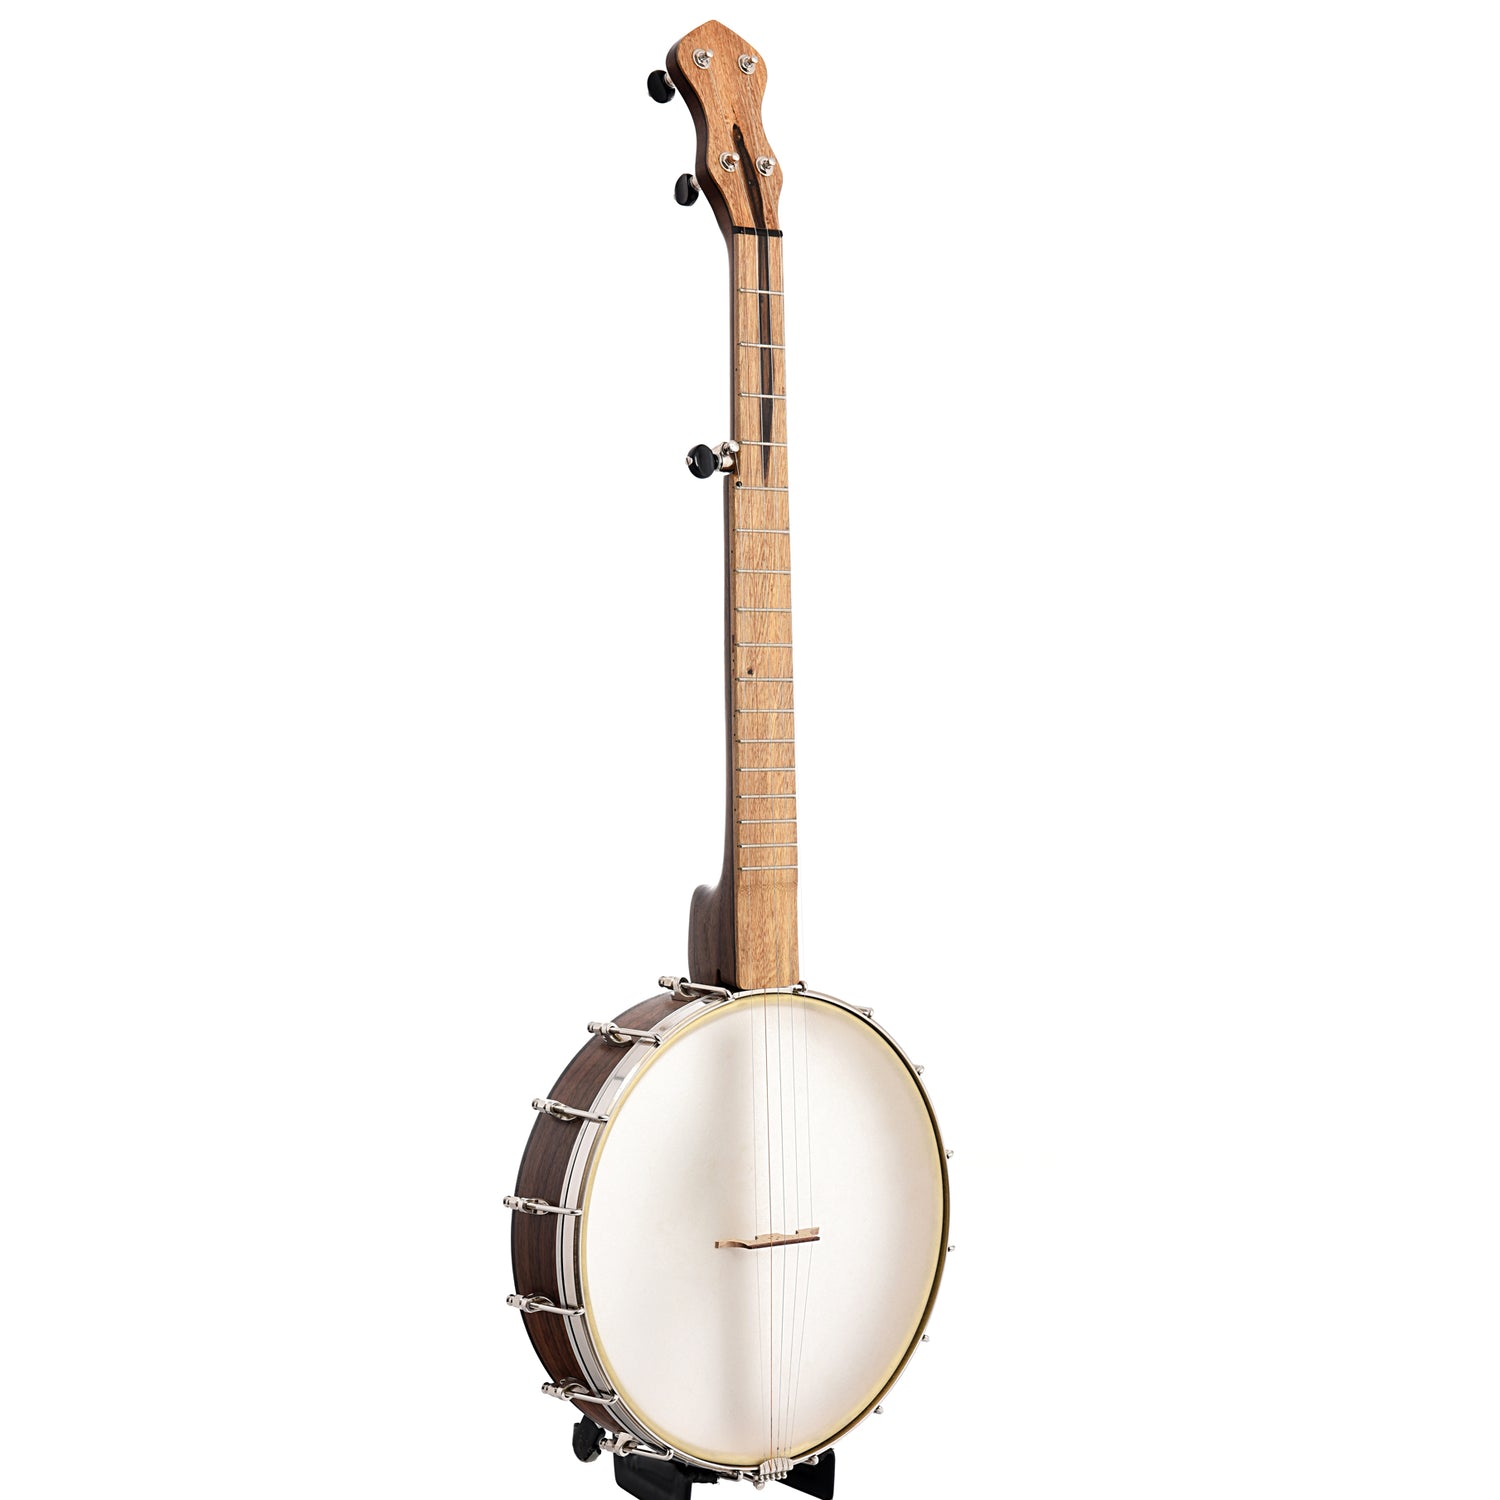 Image 1 of Dogwood Banjo Co. 12" Openback Banjo, No. 152 - SKU# DW152 : Product Type Open Back Banjos : Elderly Instruments